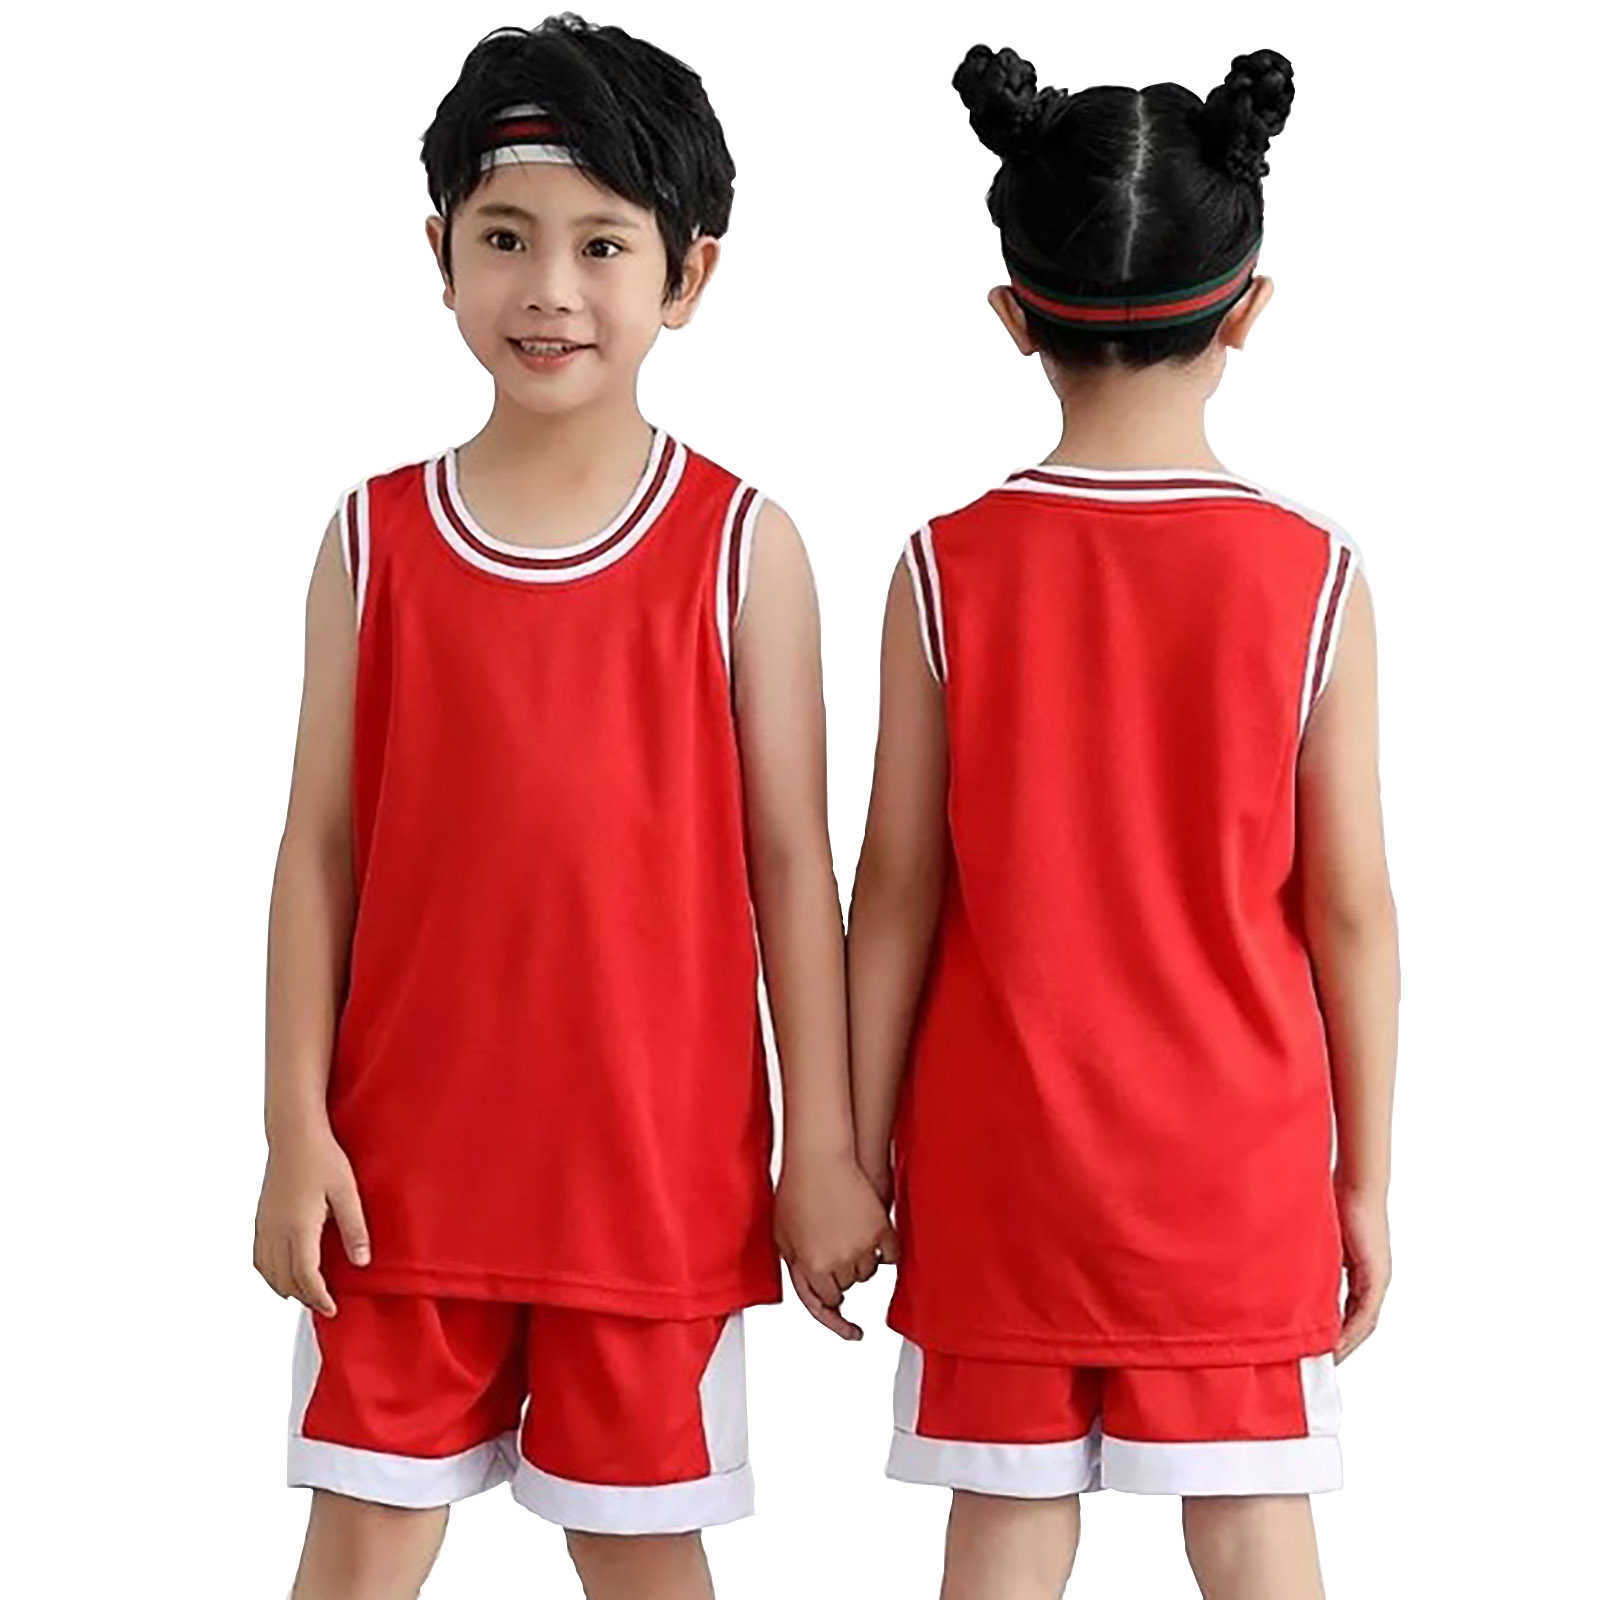 T-shirts Student Voetbal Uniform Trainingspak Kind Sport Jerseys Kids Jongens Meisje Team Basketbal Jersey Pak Voetbal Kleding Uniform 2 Stuks x0628